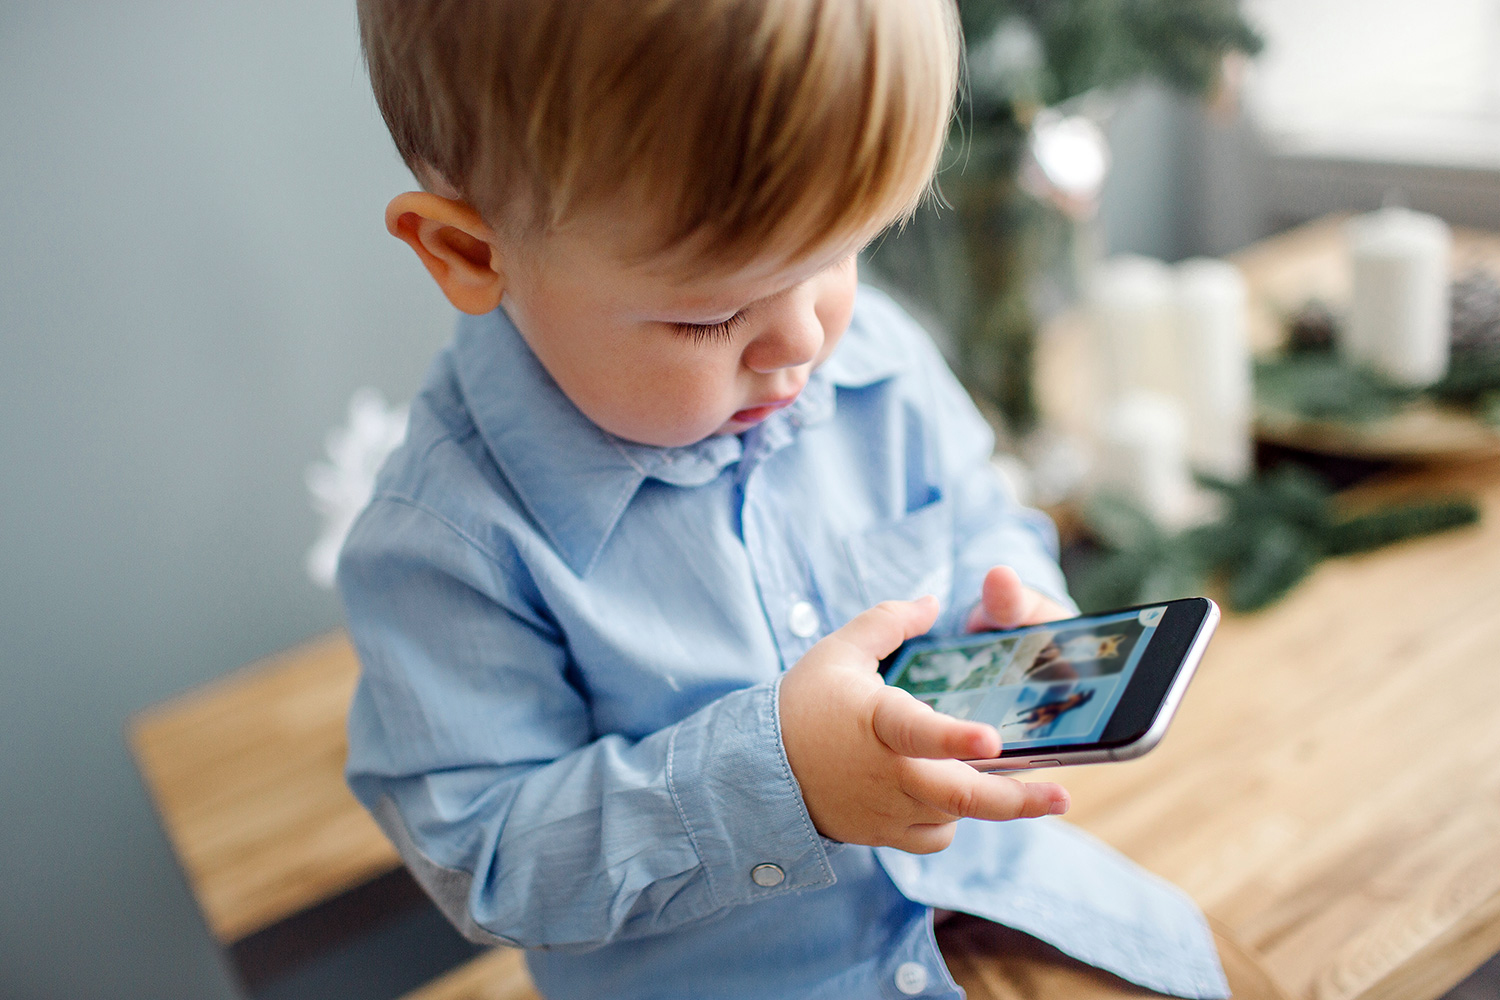 Schon Kleinkinder verbringen viel Zeit am Smartphone. Die Konsequenzen werden nun an der Universität Graz untersucht. Foto: Shutterstock/Pakhomava ©shutterstock/Pakhomava